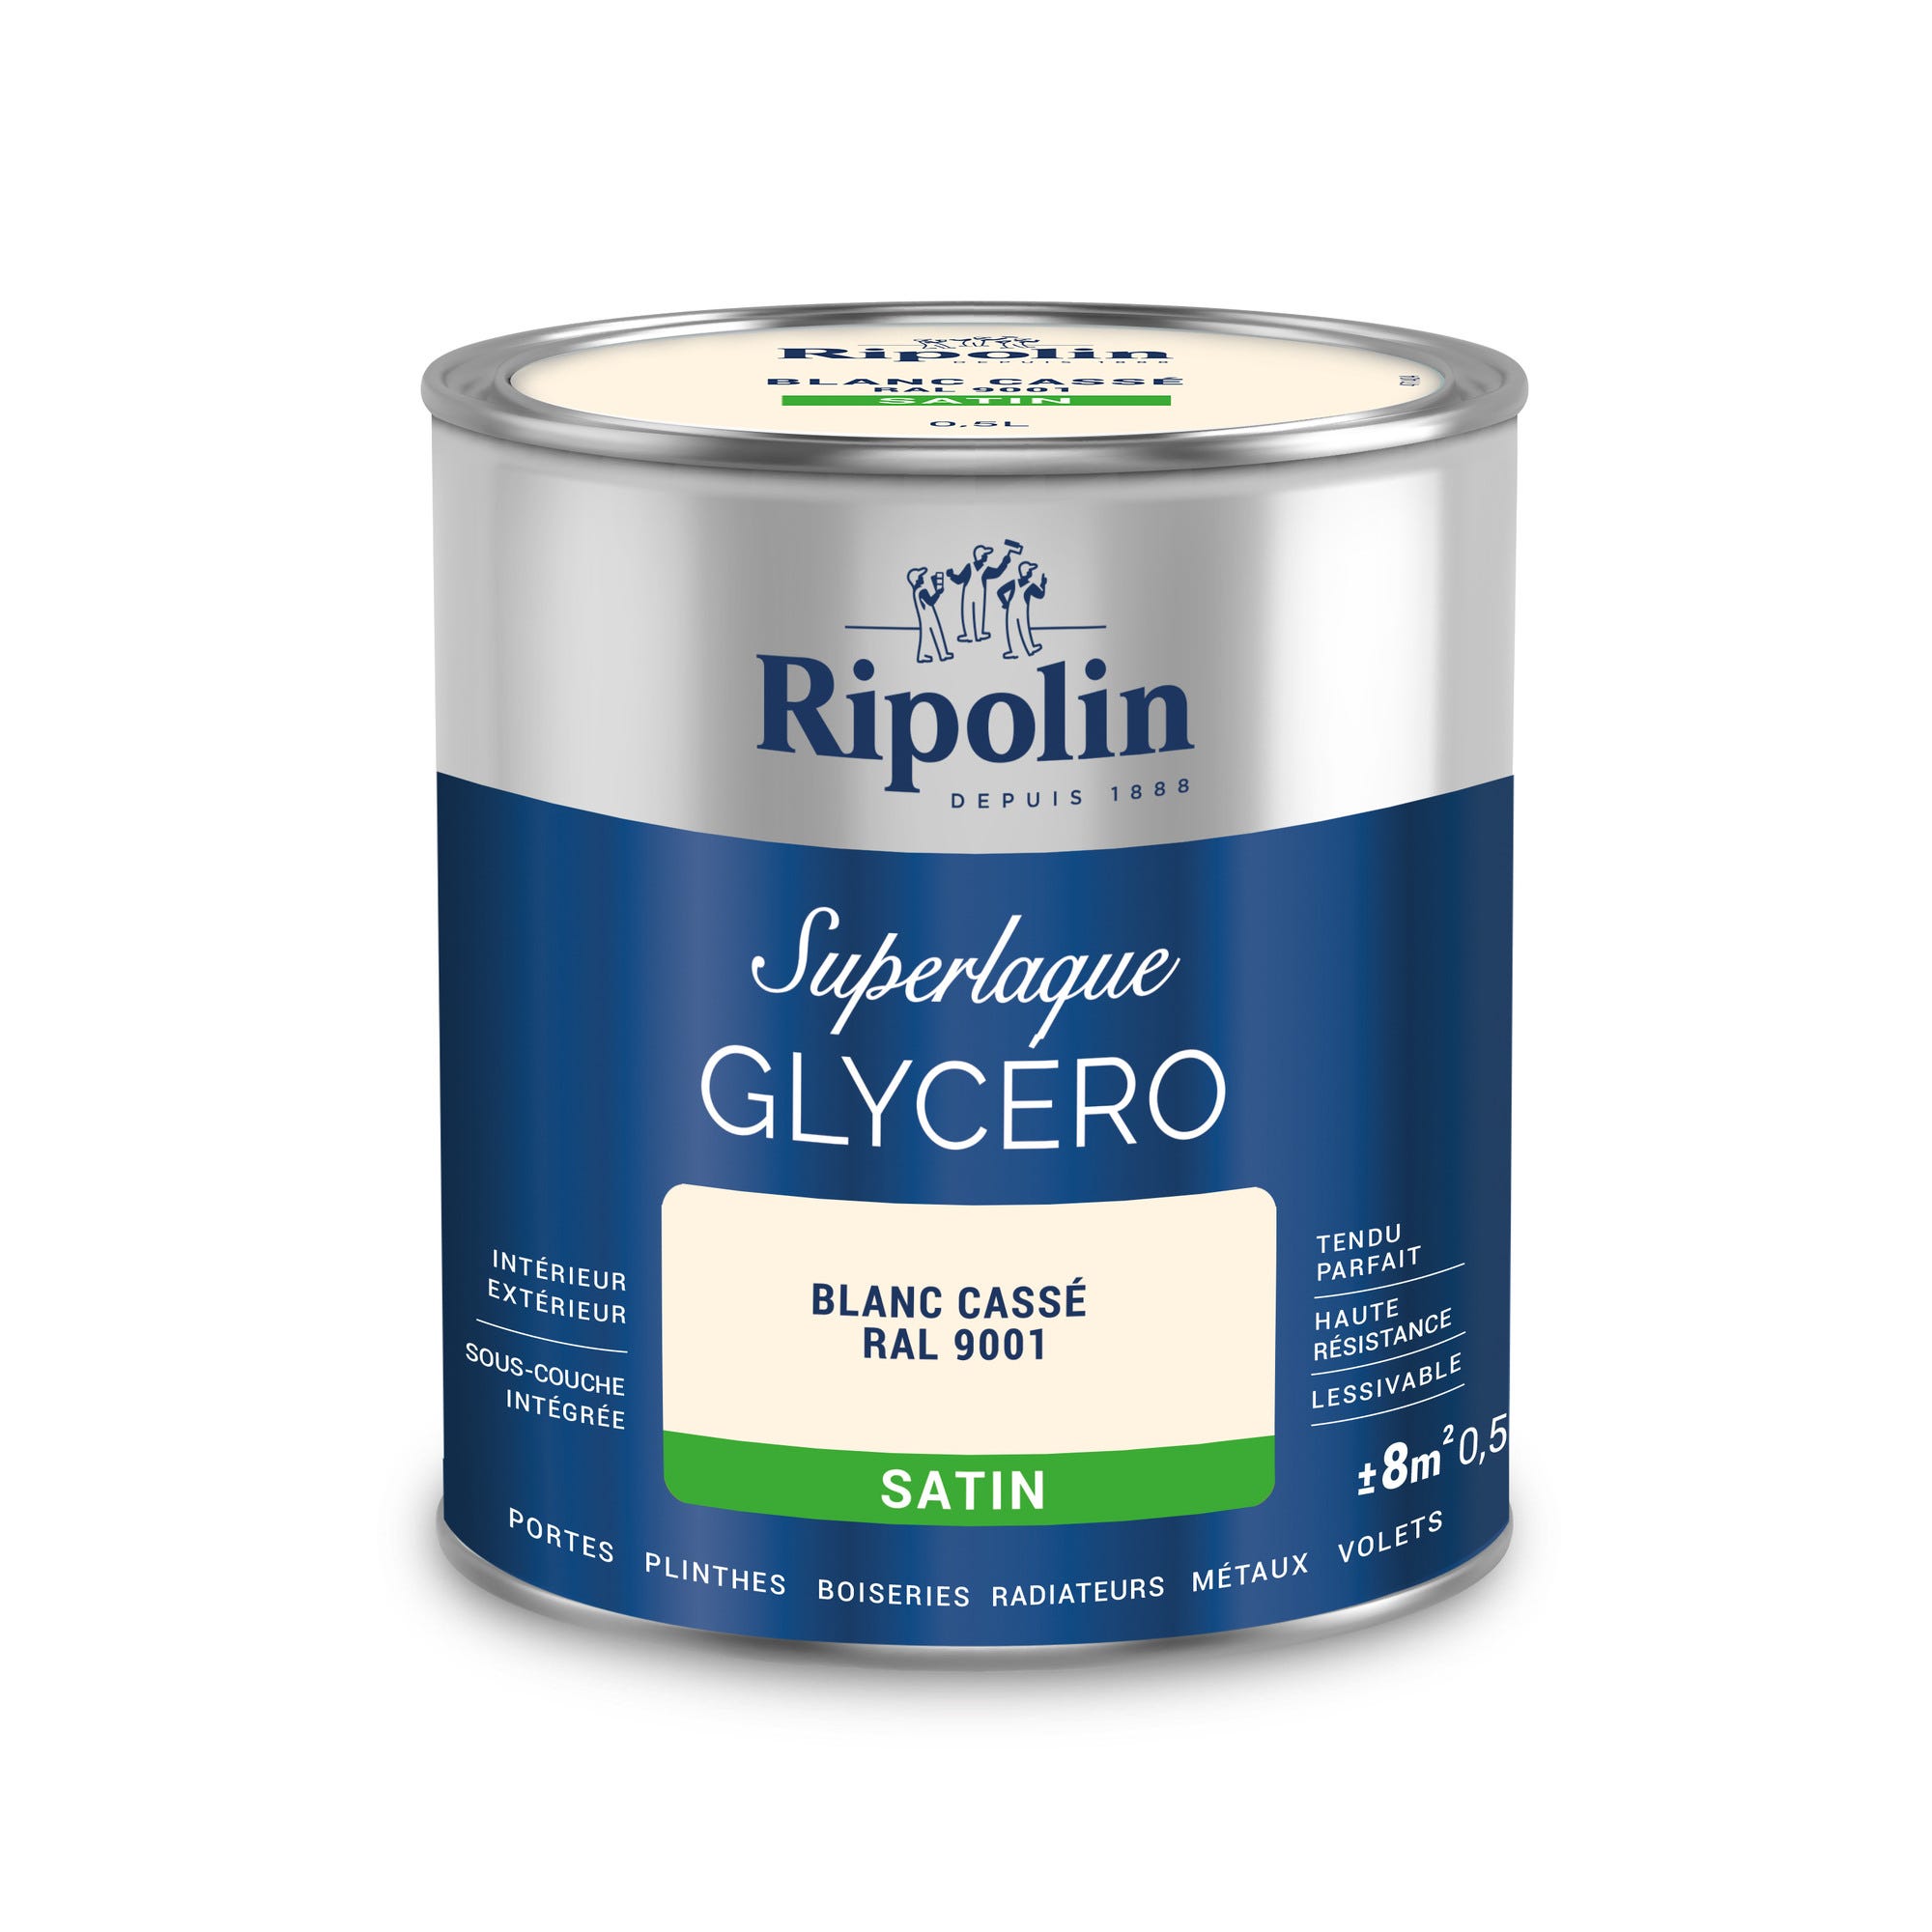 Peinture intérieure et extérieure multi-supports glycéro satin blanc cassé 0,5 L - RIPOLIN 2